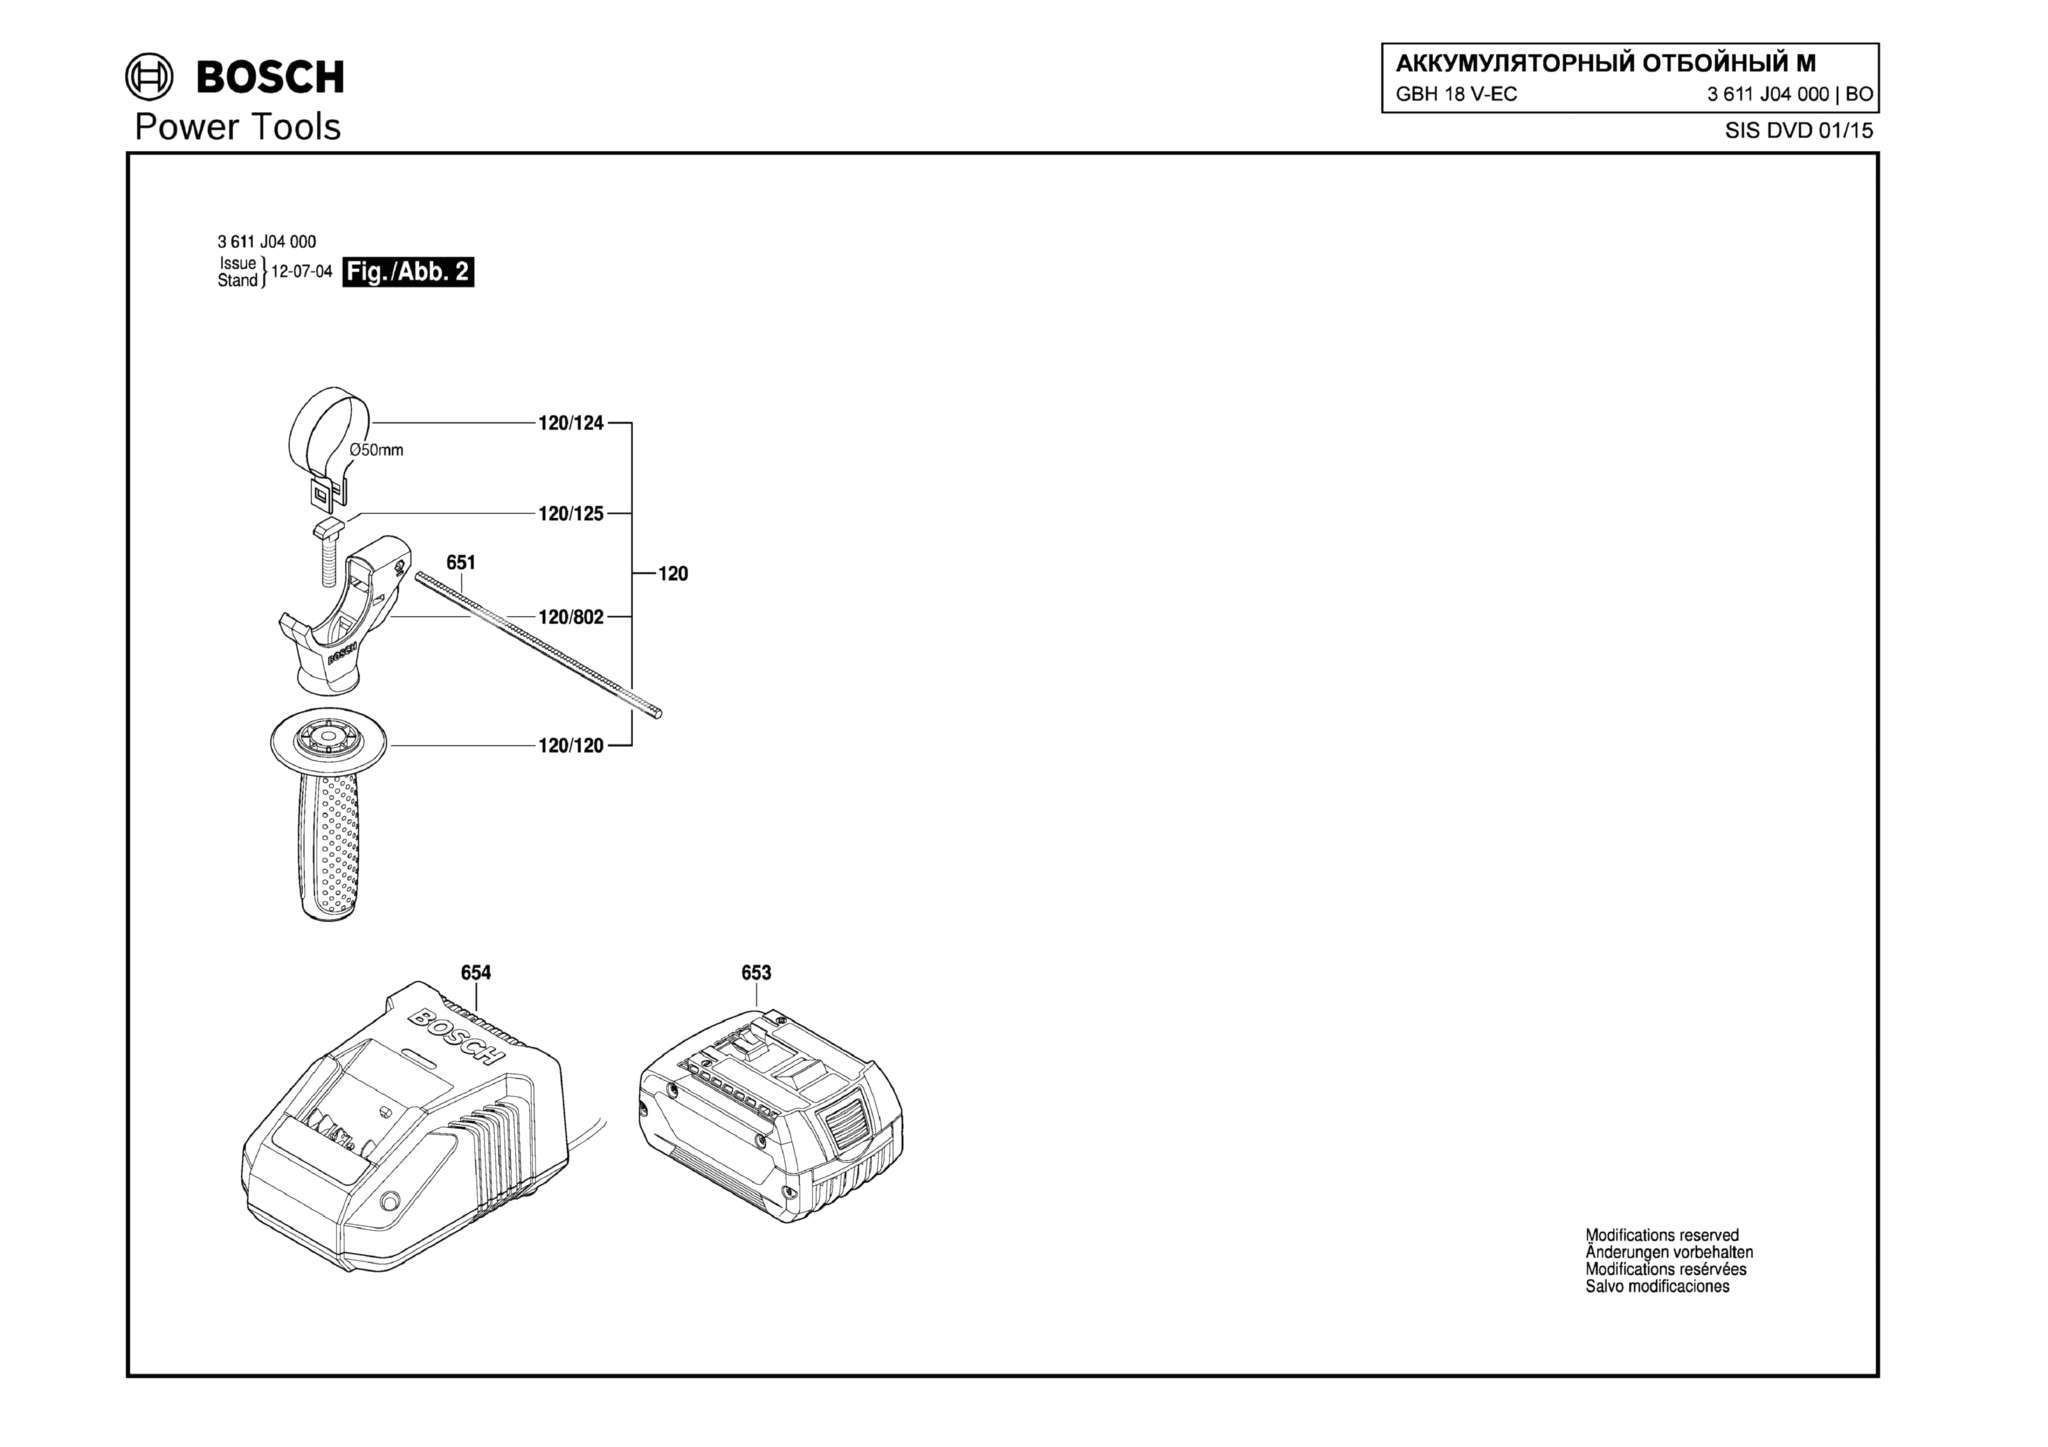 Запчасти, схема и деталировка Bosch GBH 18 V-EC (ТИП 3611J04000) (ЧАСТЬ 2)